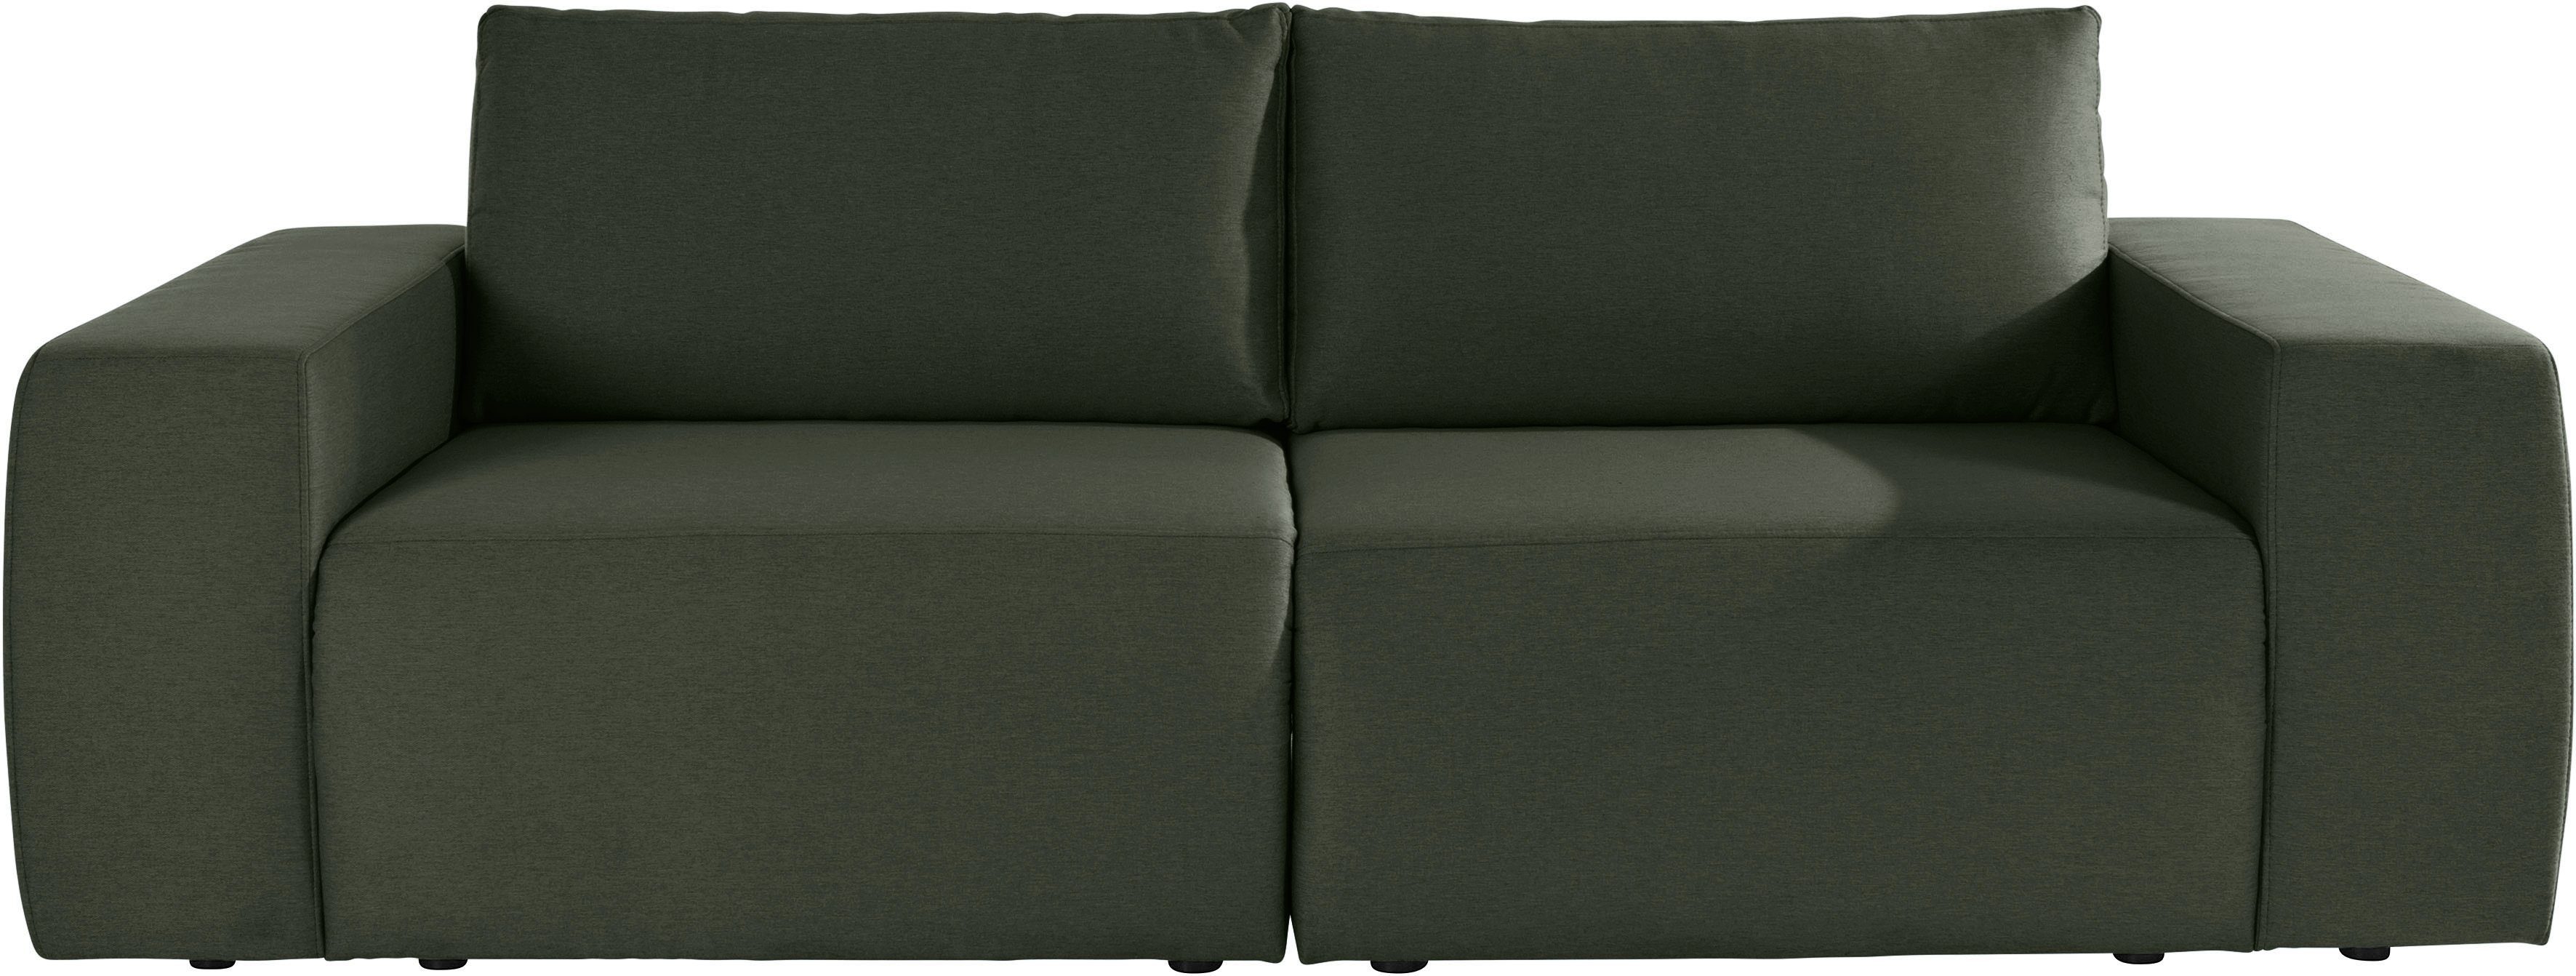 geradlinig by und LOOKS Wolfgang Joop LooksII, komfortabel Big-Sofa